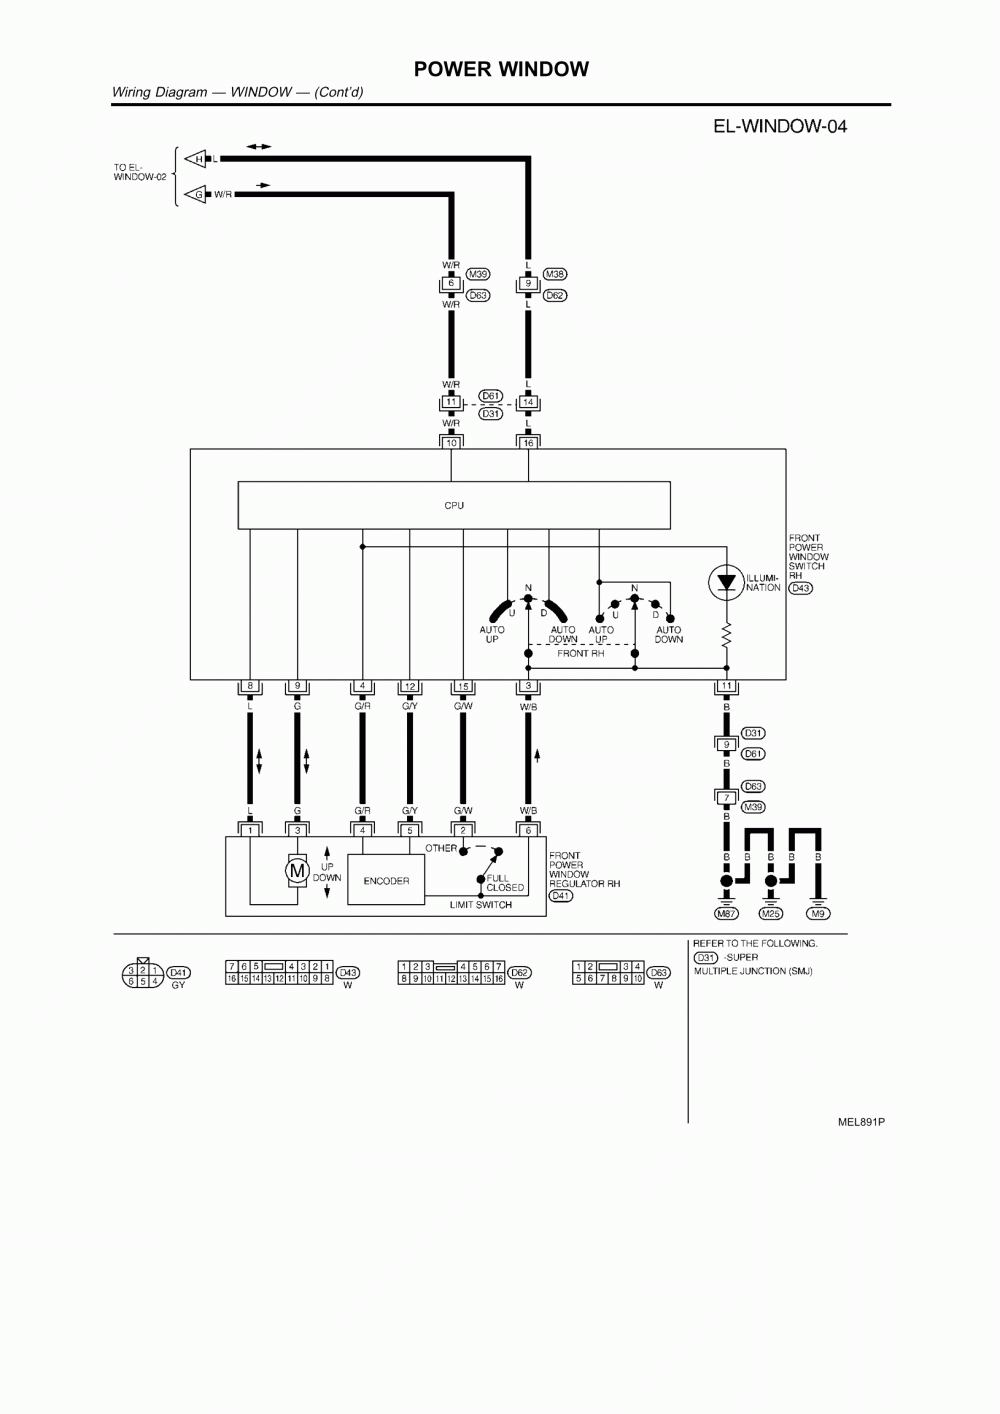 Universal Power Window Wiring Schematic | Wiring Library - Universal Power Window Wiring Diagram